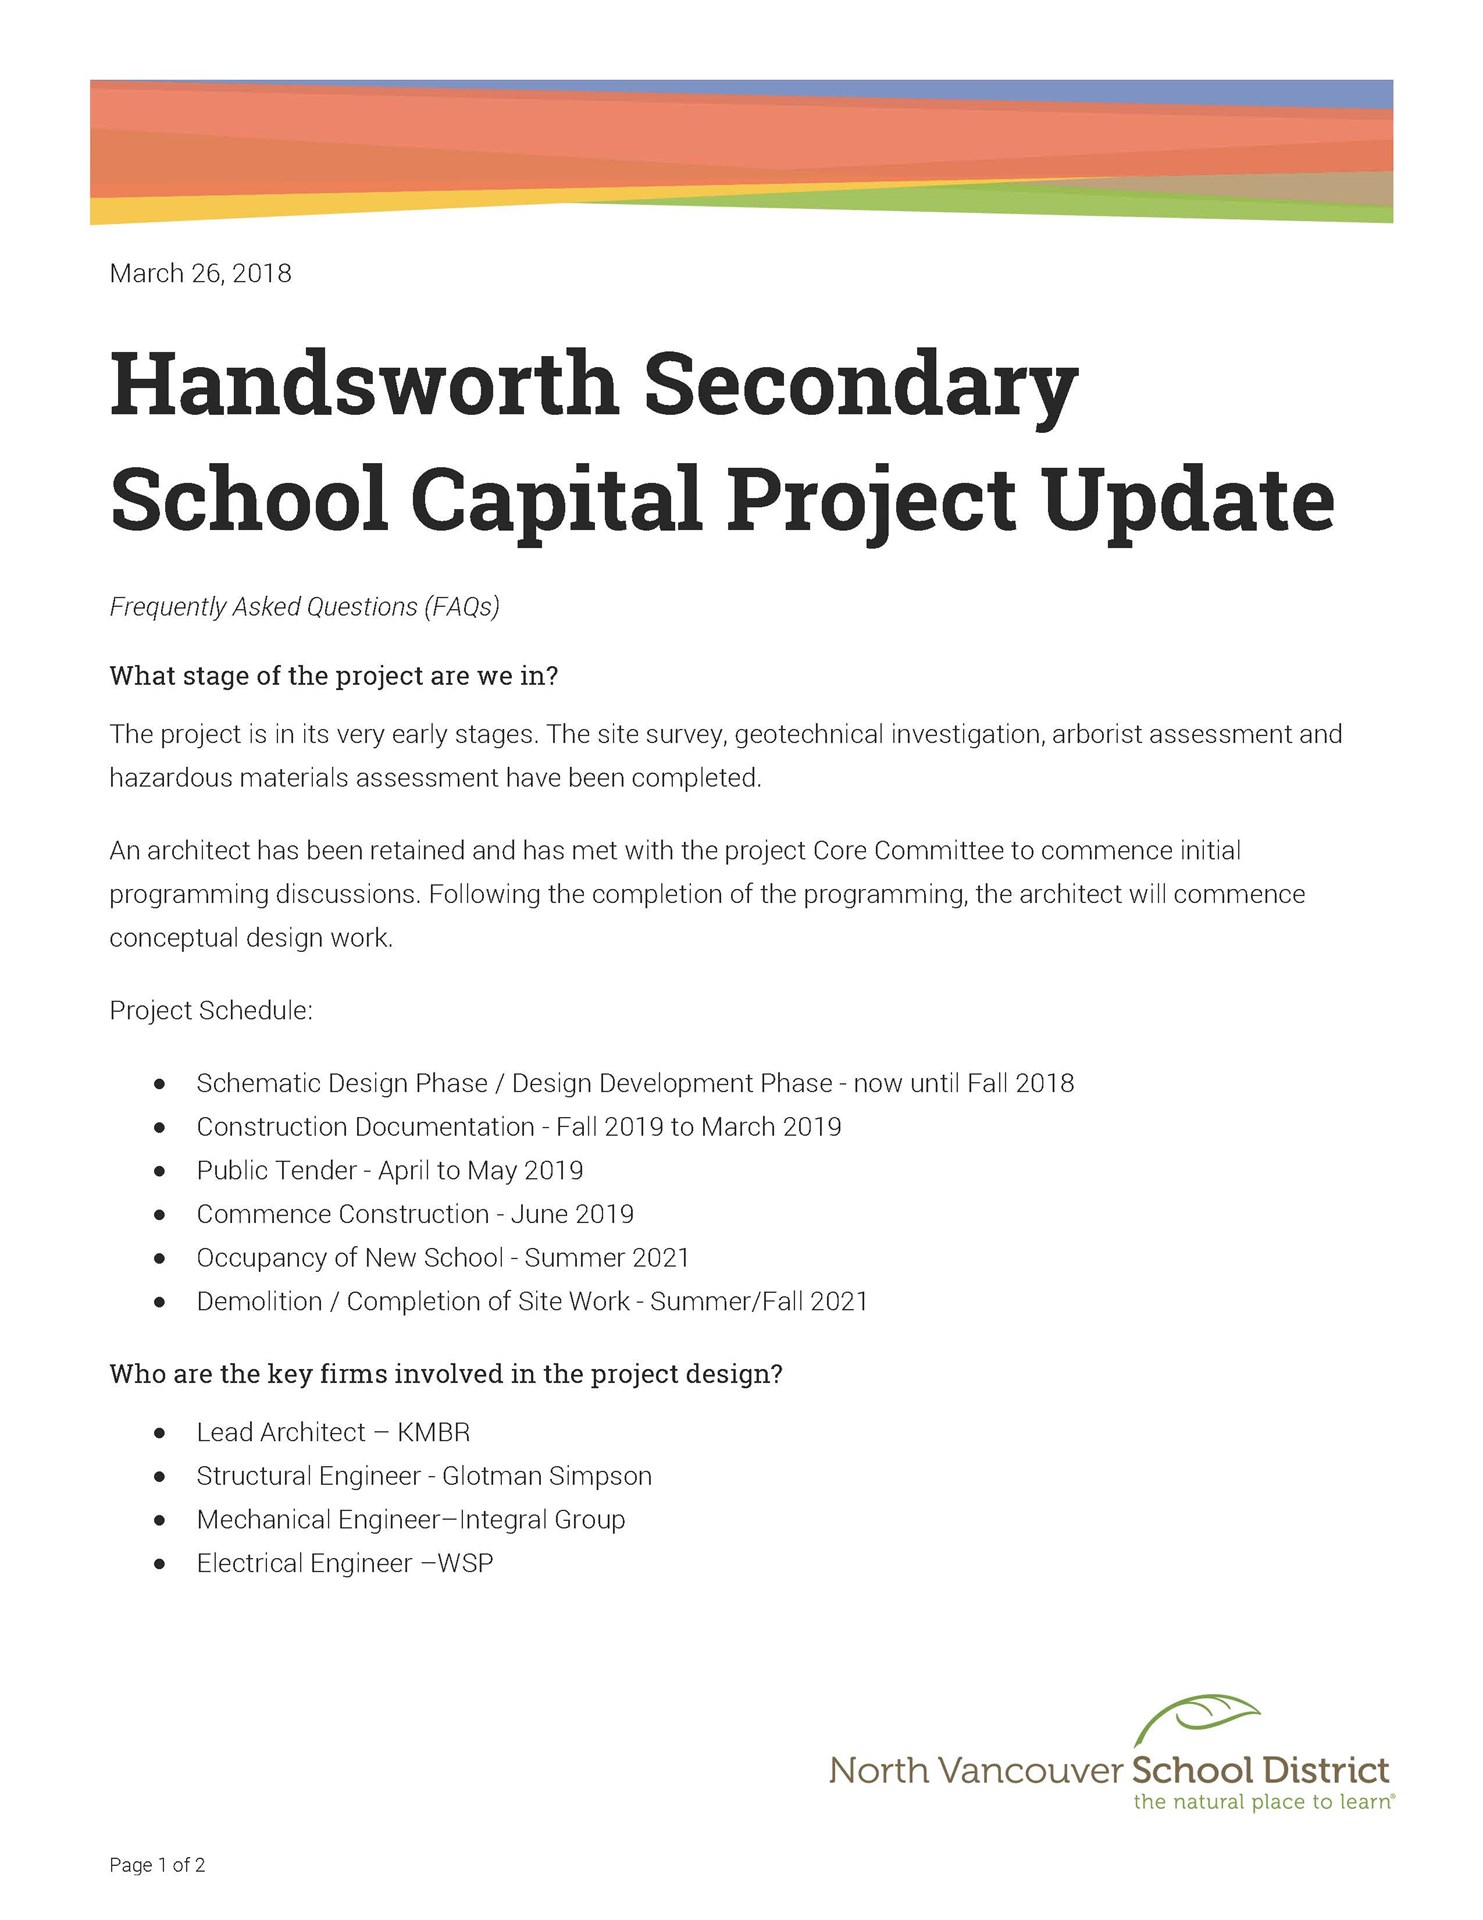 Handsworth Update 03262018_Page_1.jpg